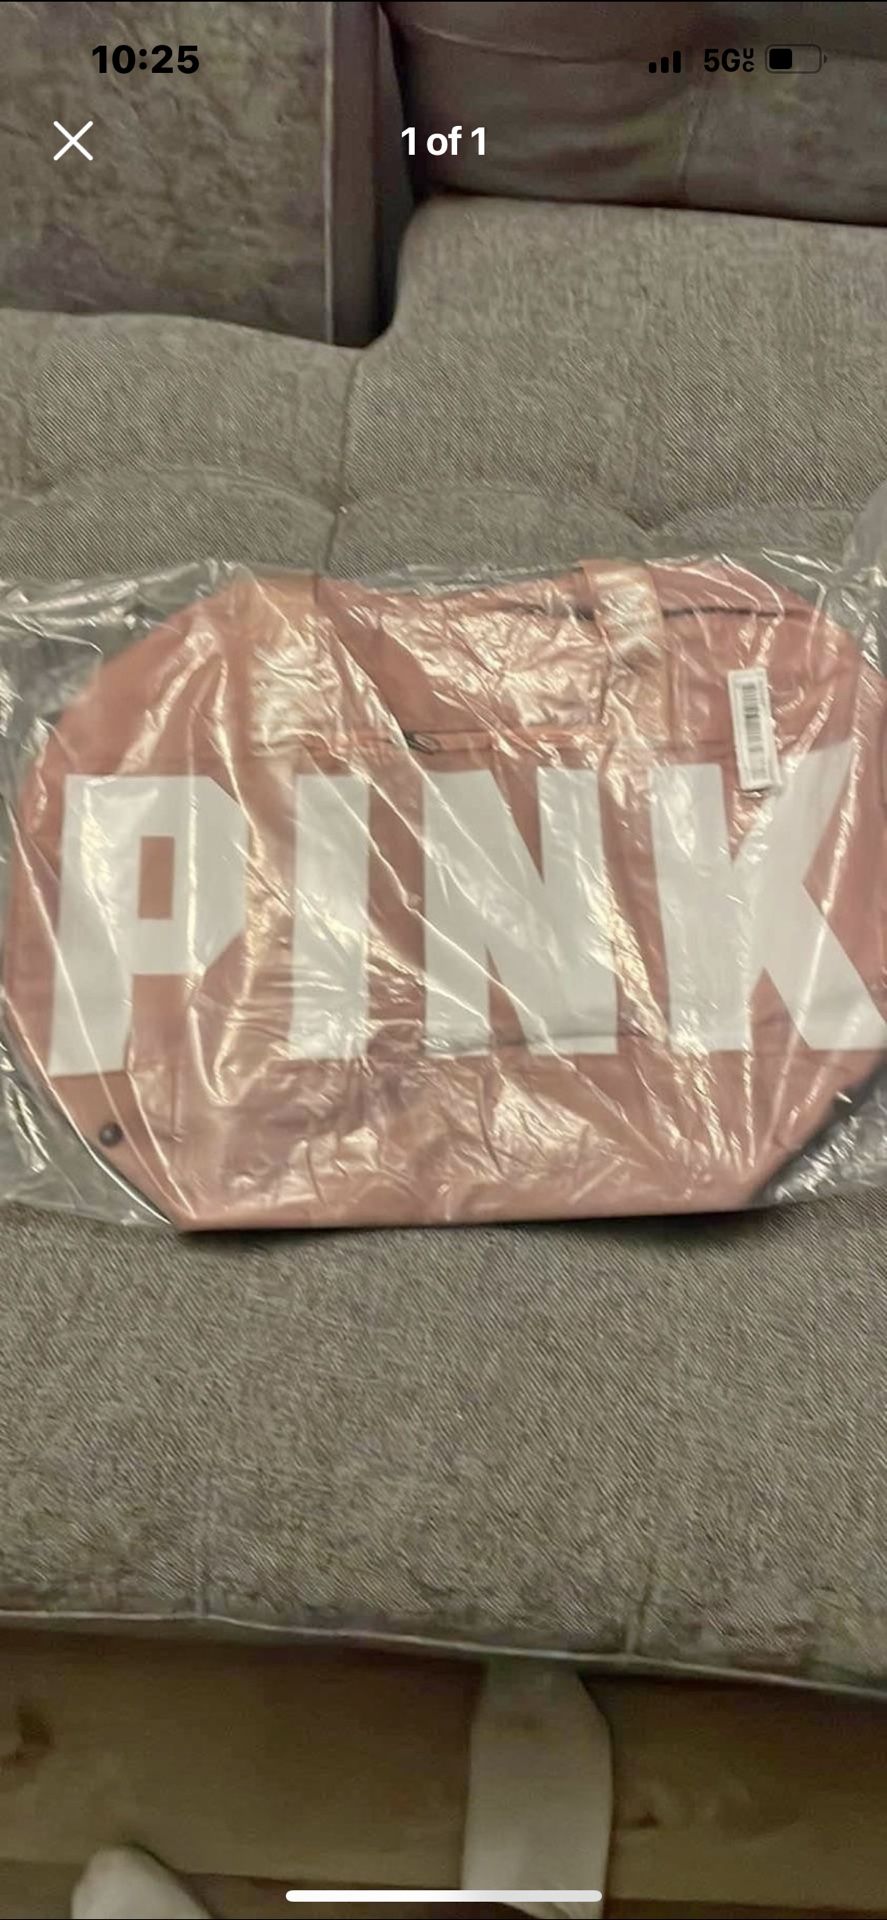 Pink Duffle Bag